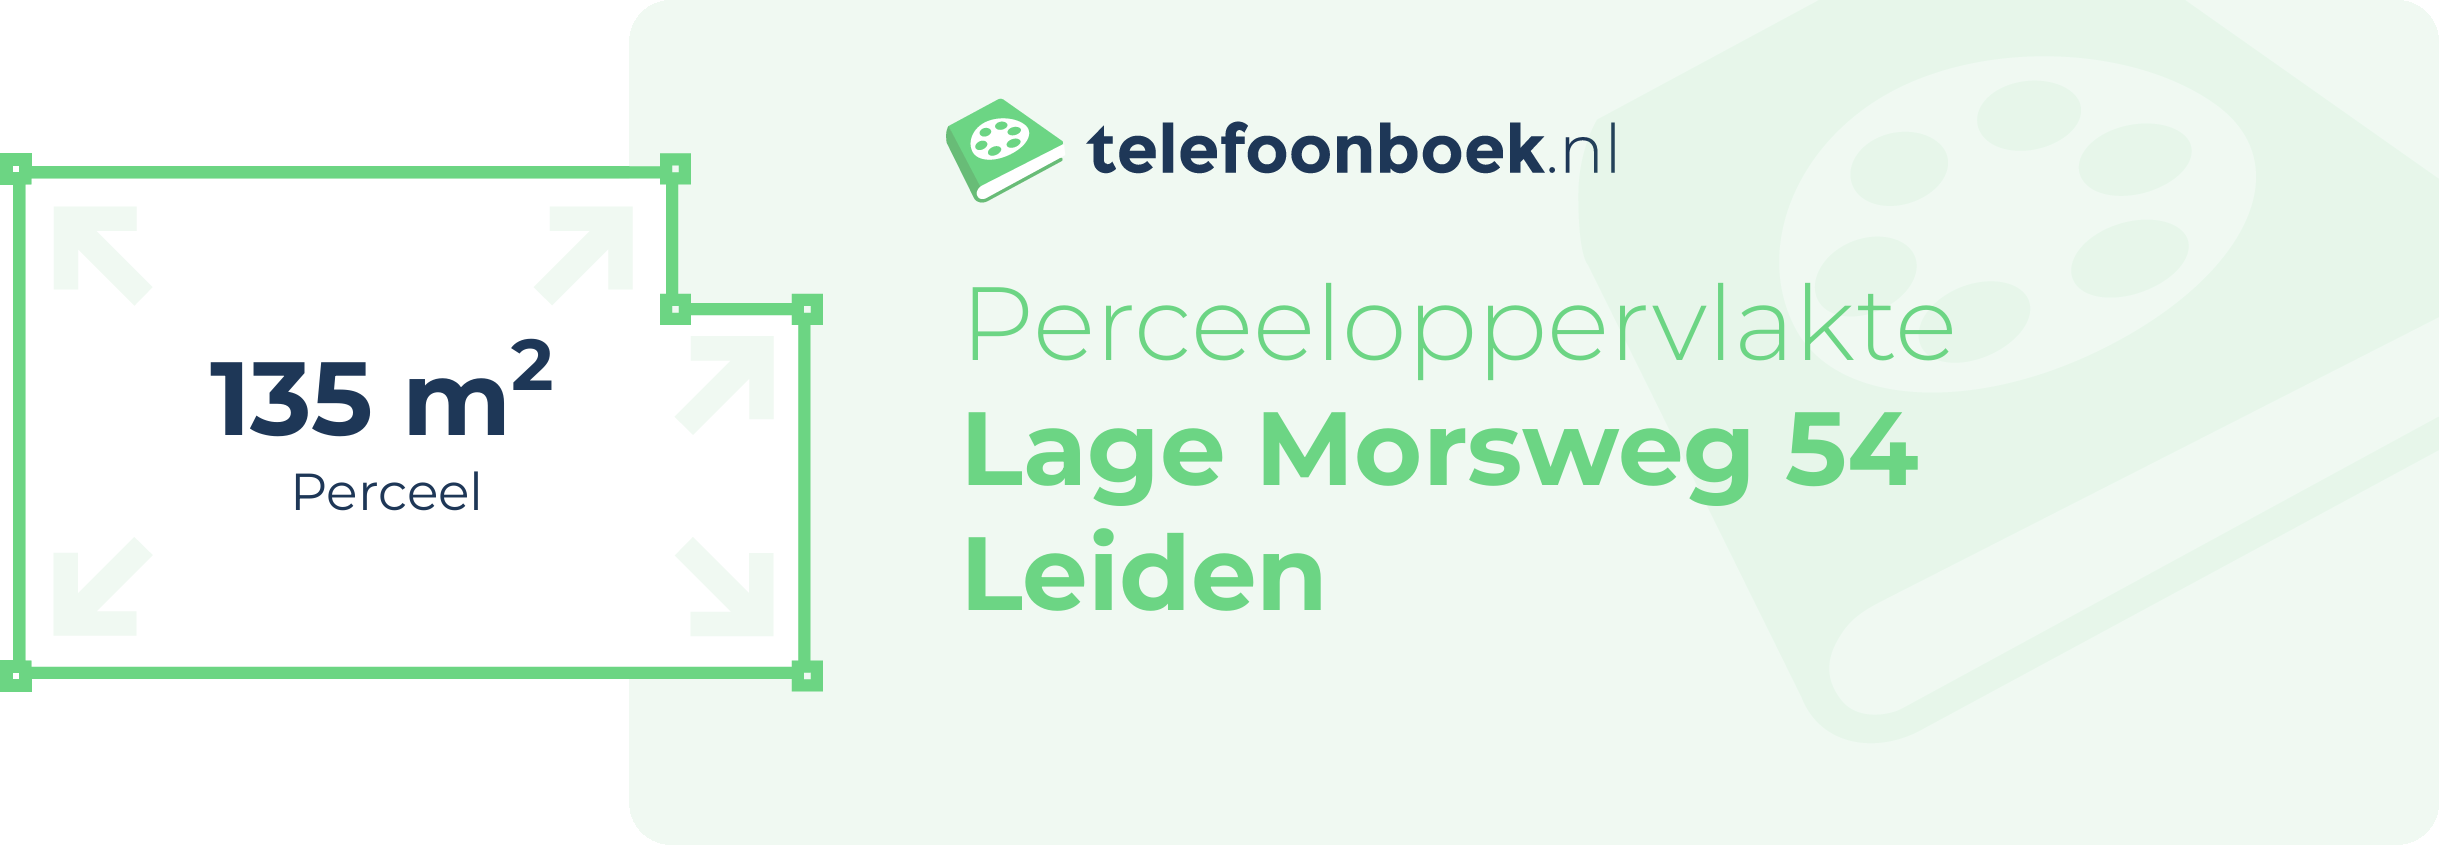 Perceeloppervlakte Lage Morsweg 54 Leiden